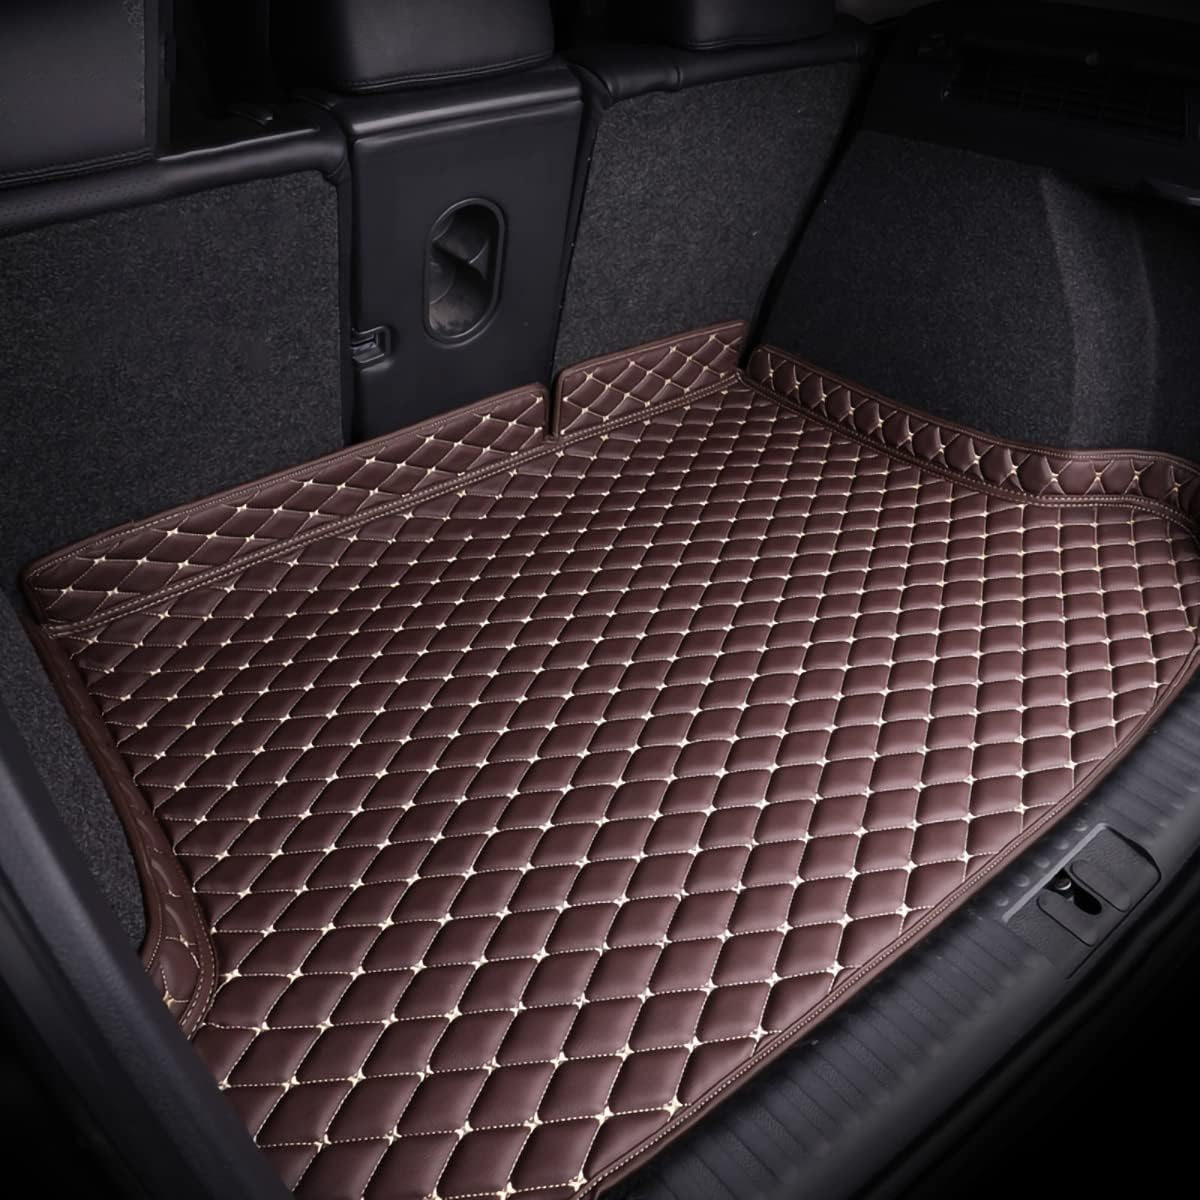 Auto Kofferraummatten für Buick Lacrosse 2016-, Kratzfeste Kofferraum Schutzmatten.,Brown von LPOOSAKW